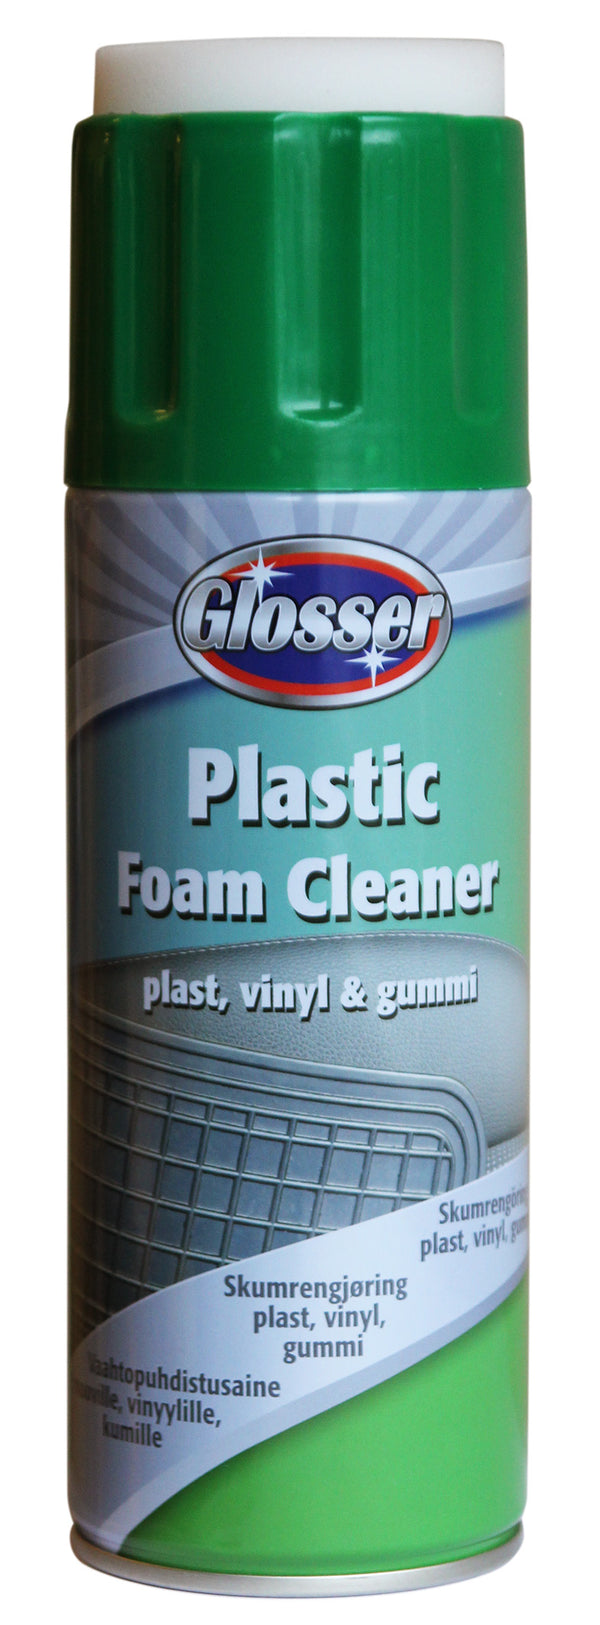 Glosser Foamcleaner Plastic 450ml